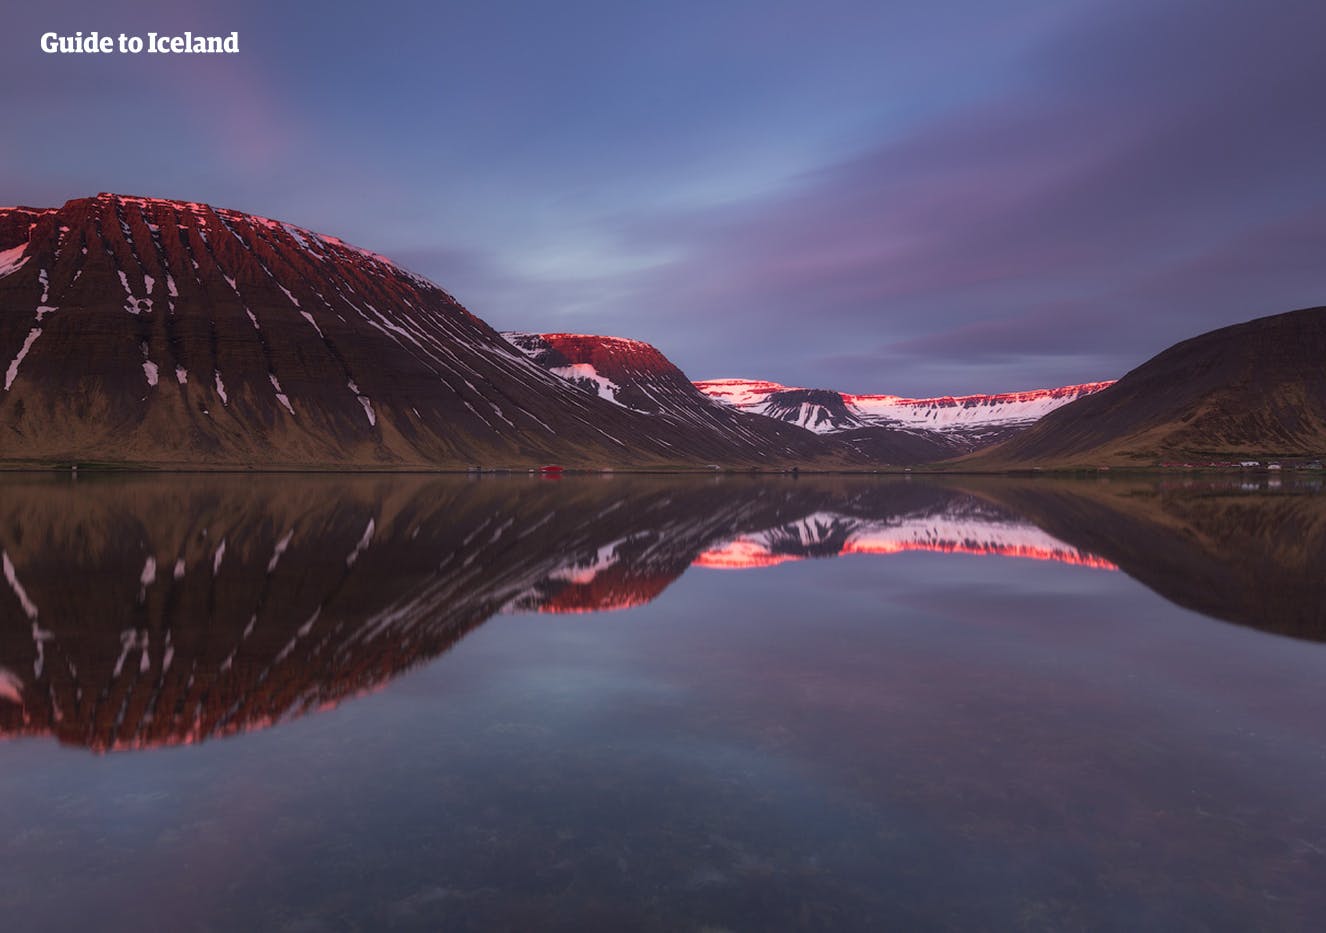 Panorami mozzafiato nei fiordi occidentali dell'Islanda.